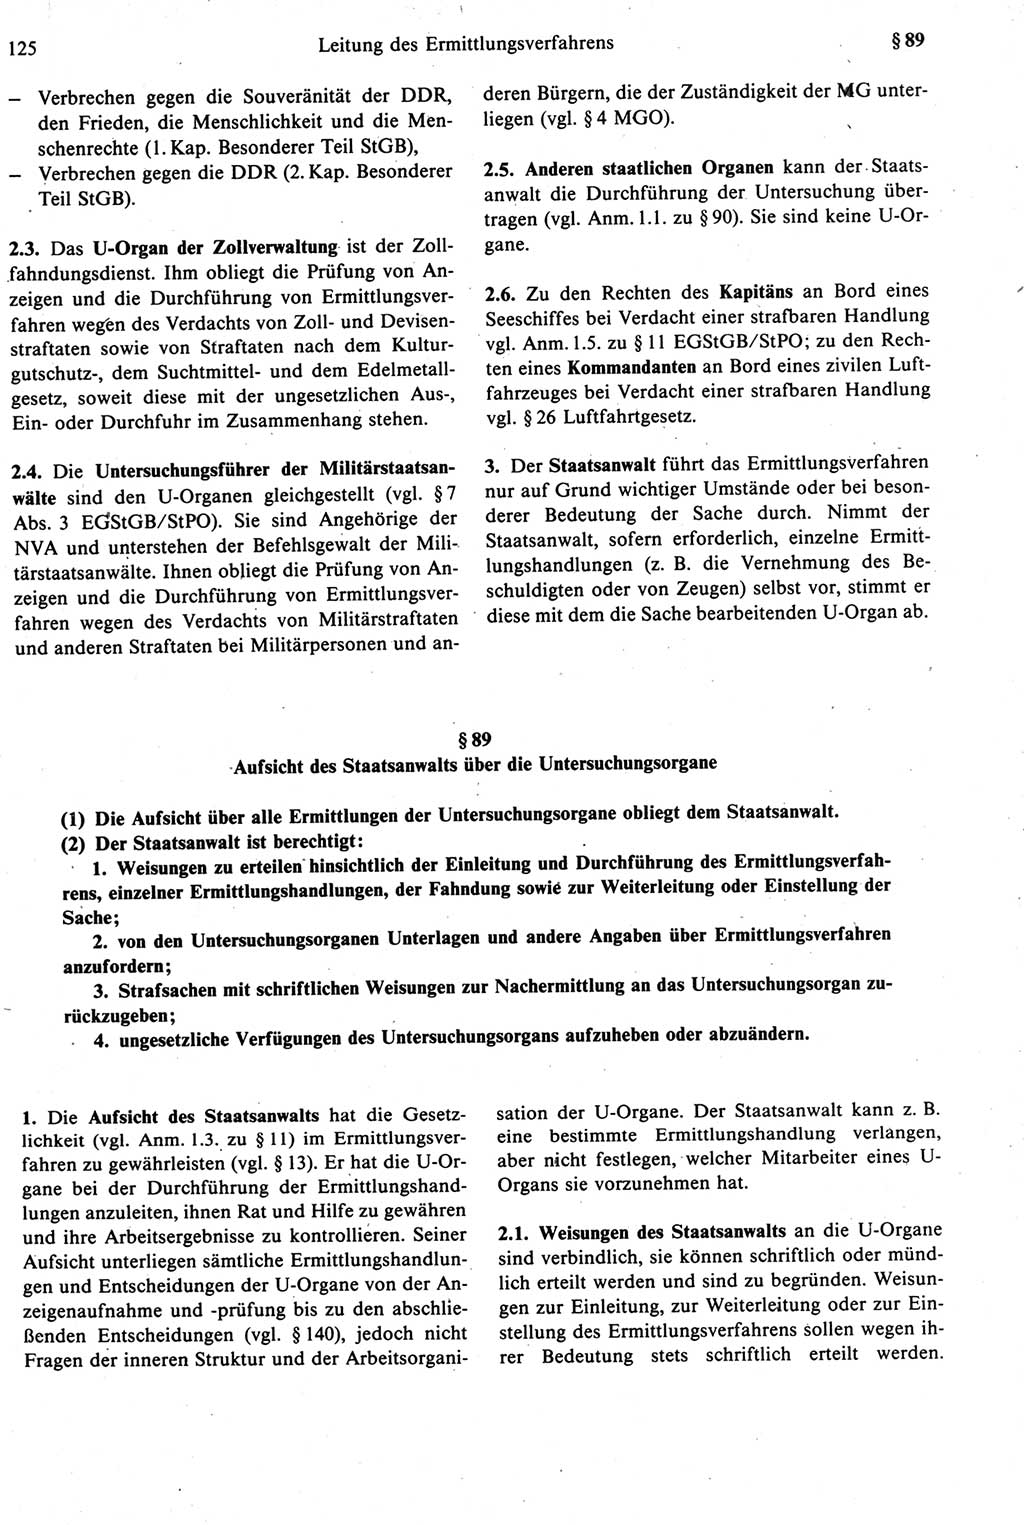 Strafprozeßrecht der DDR [Deutsche Demokratische Republik], Kommentar zur Strafprozeßordnung (StPO) 1987, Seite 125 (Strafprozeßr. DDR Komm. StPO 1987, S. 125)